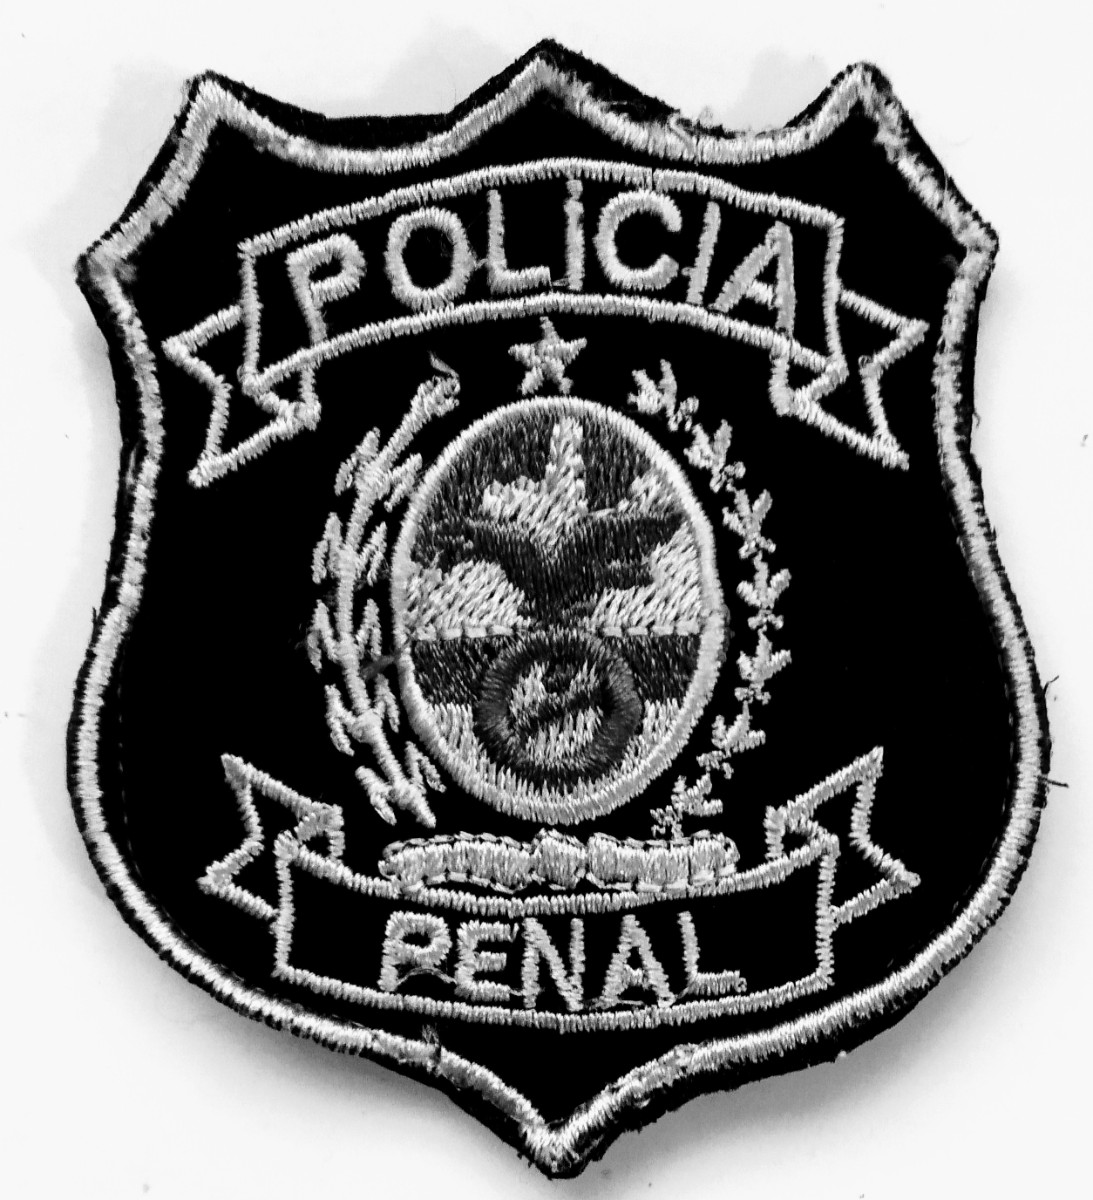 Polícia Penal